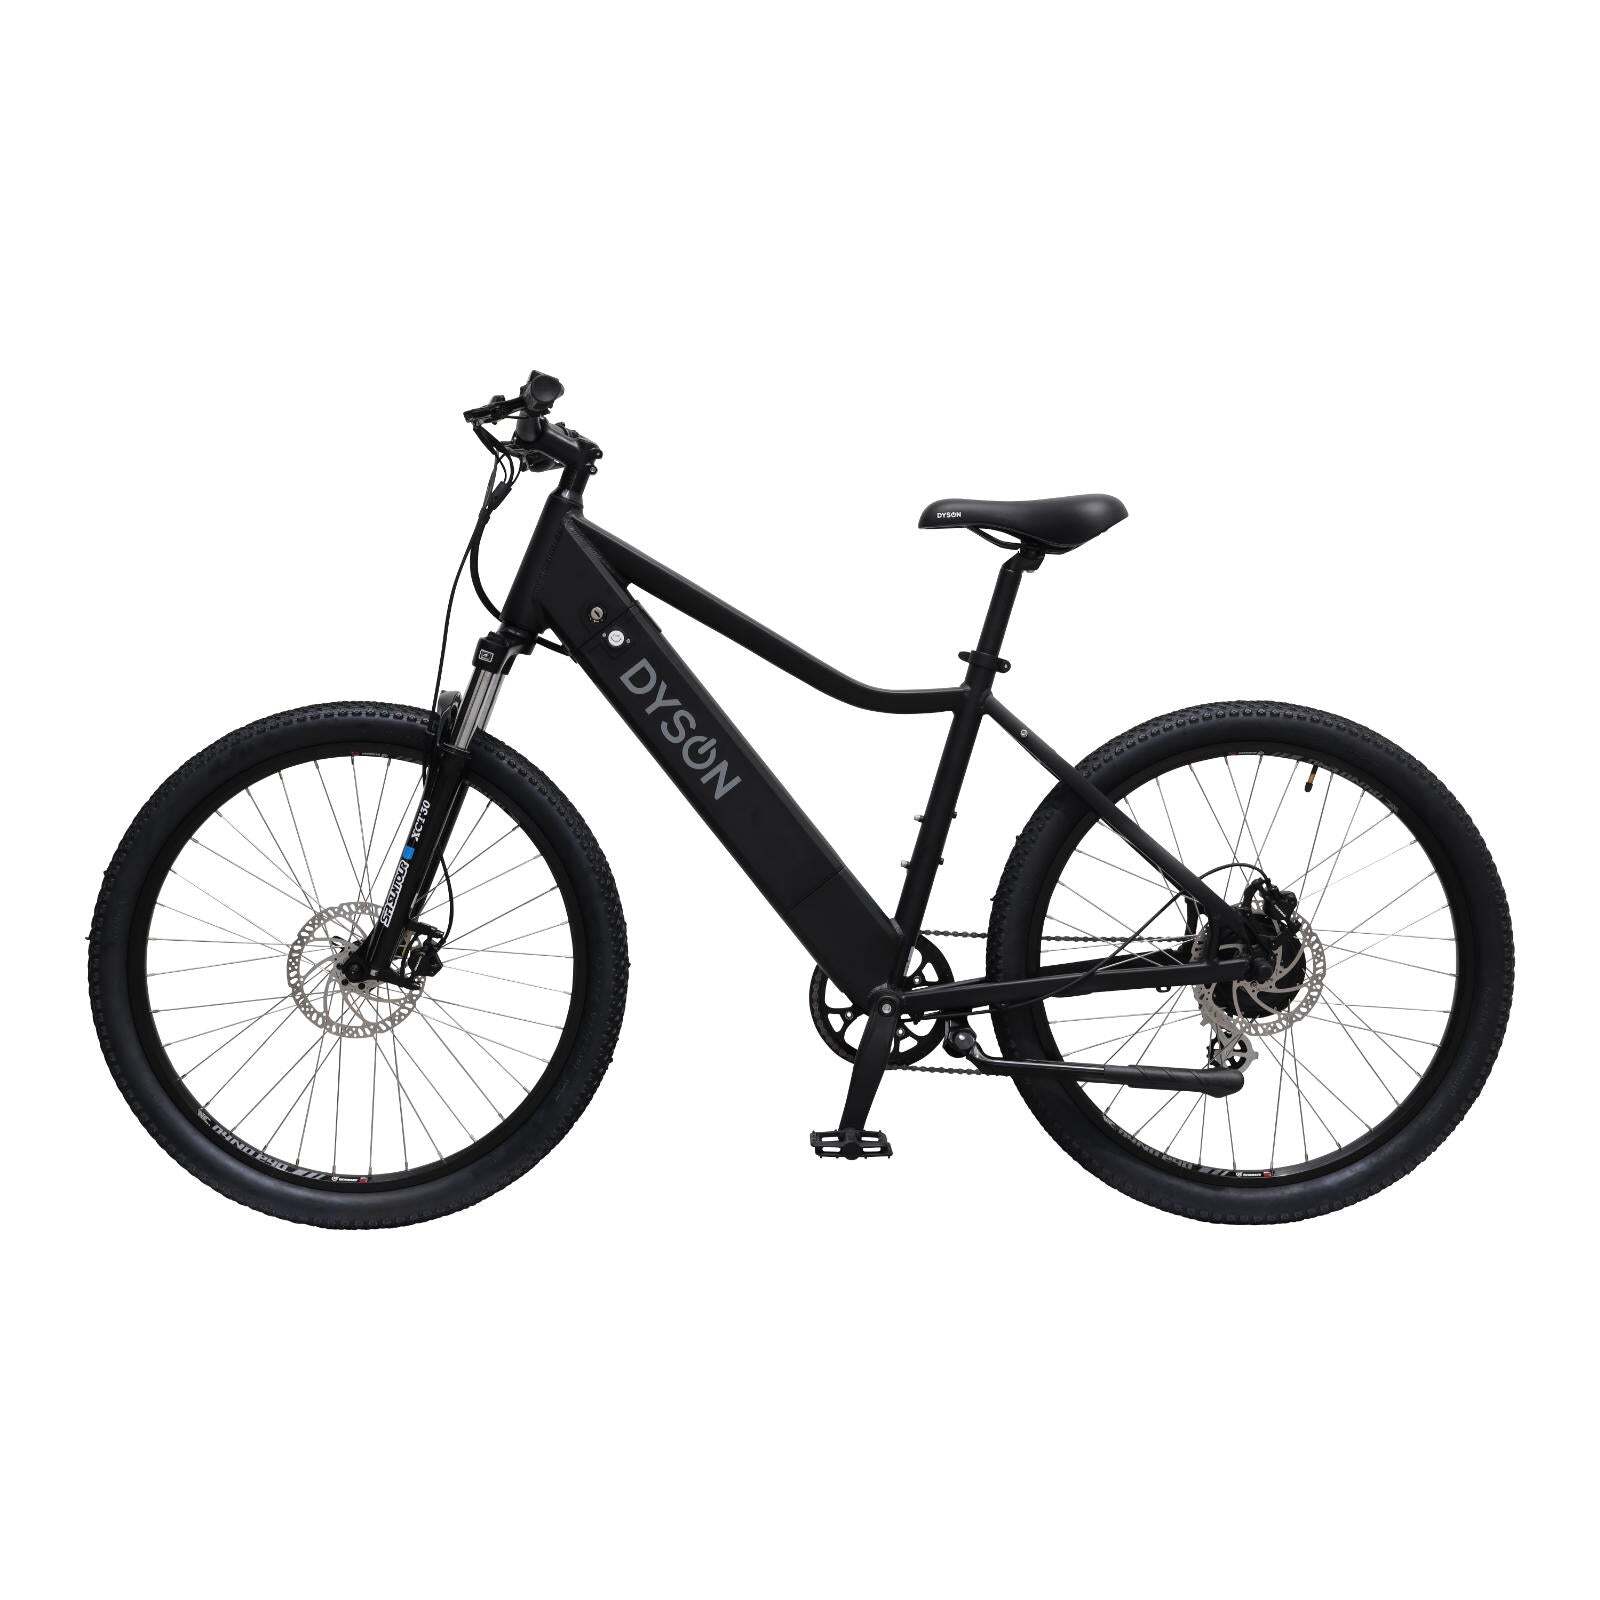 Electric bike | Evo speed | Dyson Bikes